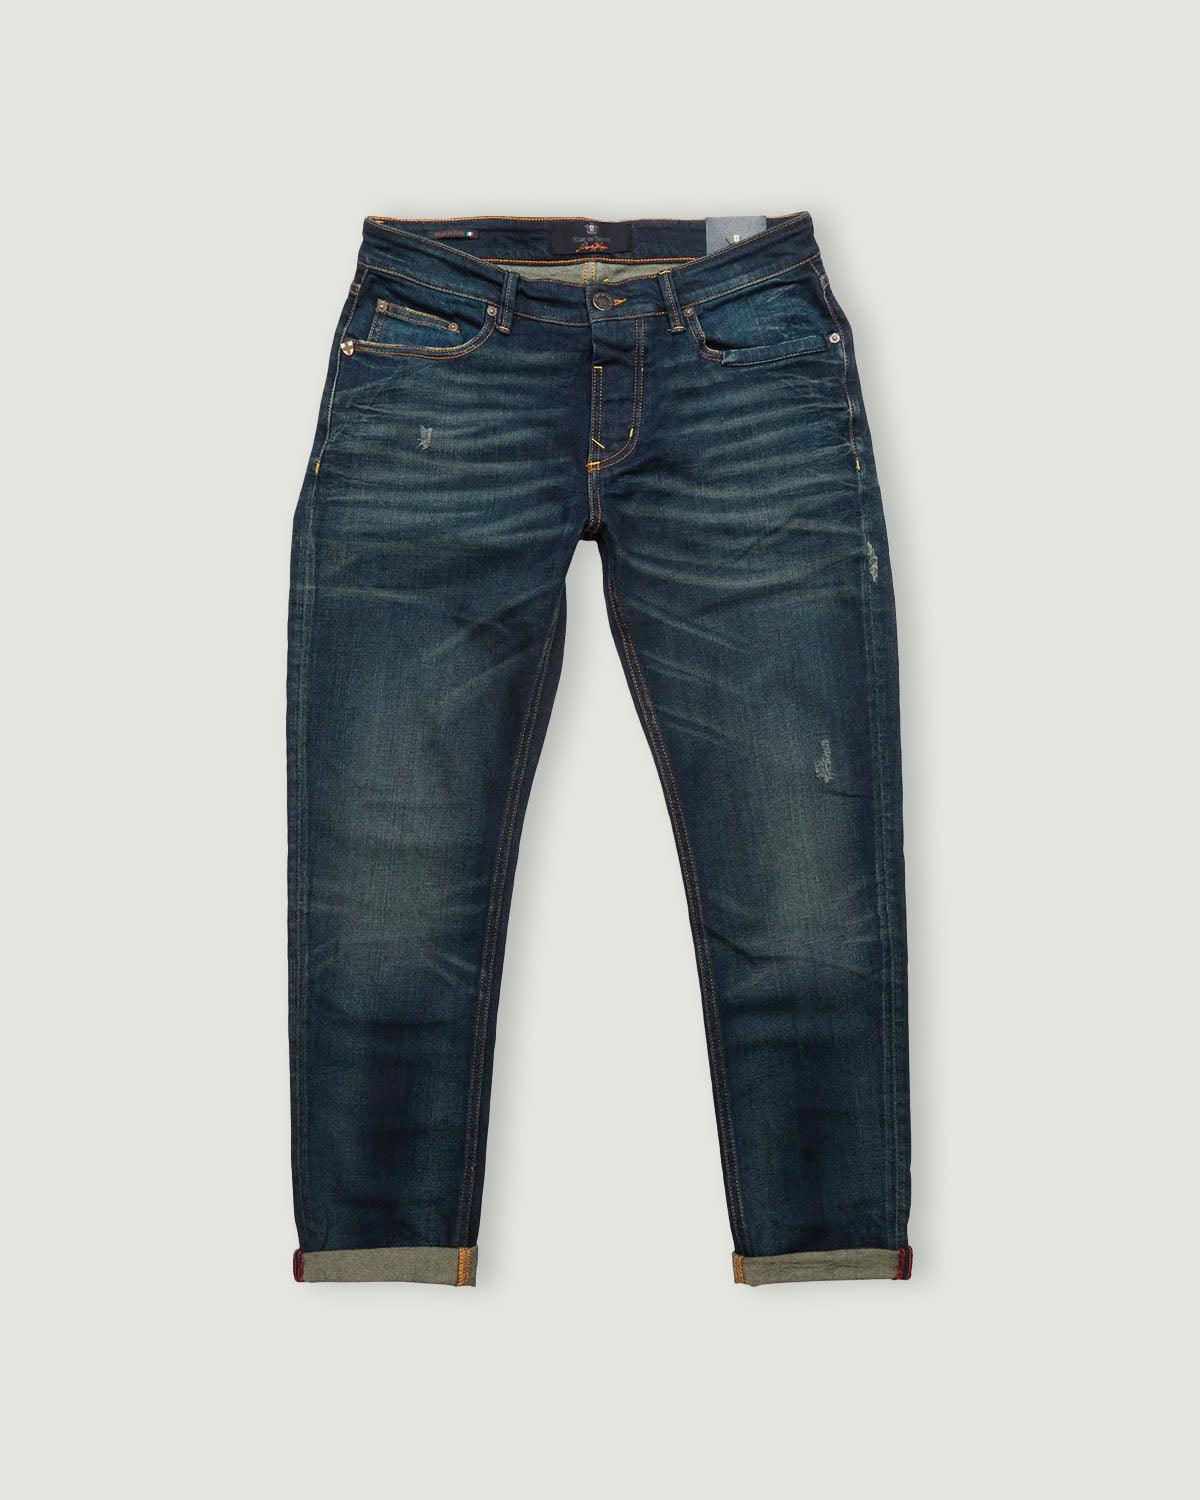 Vinci Rough Jeans - Mid Blue Denim - Blue de Genes - Kul og Koks